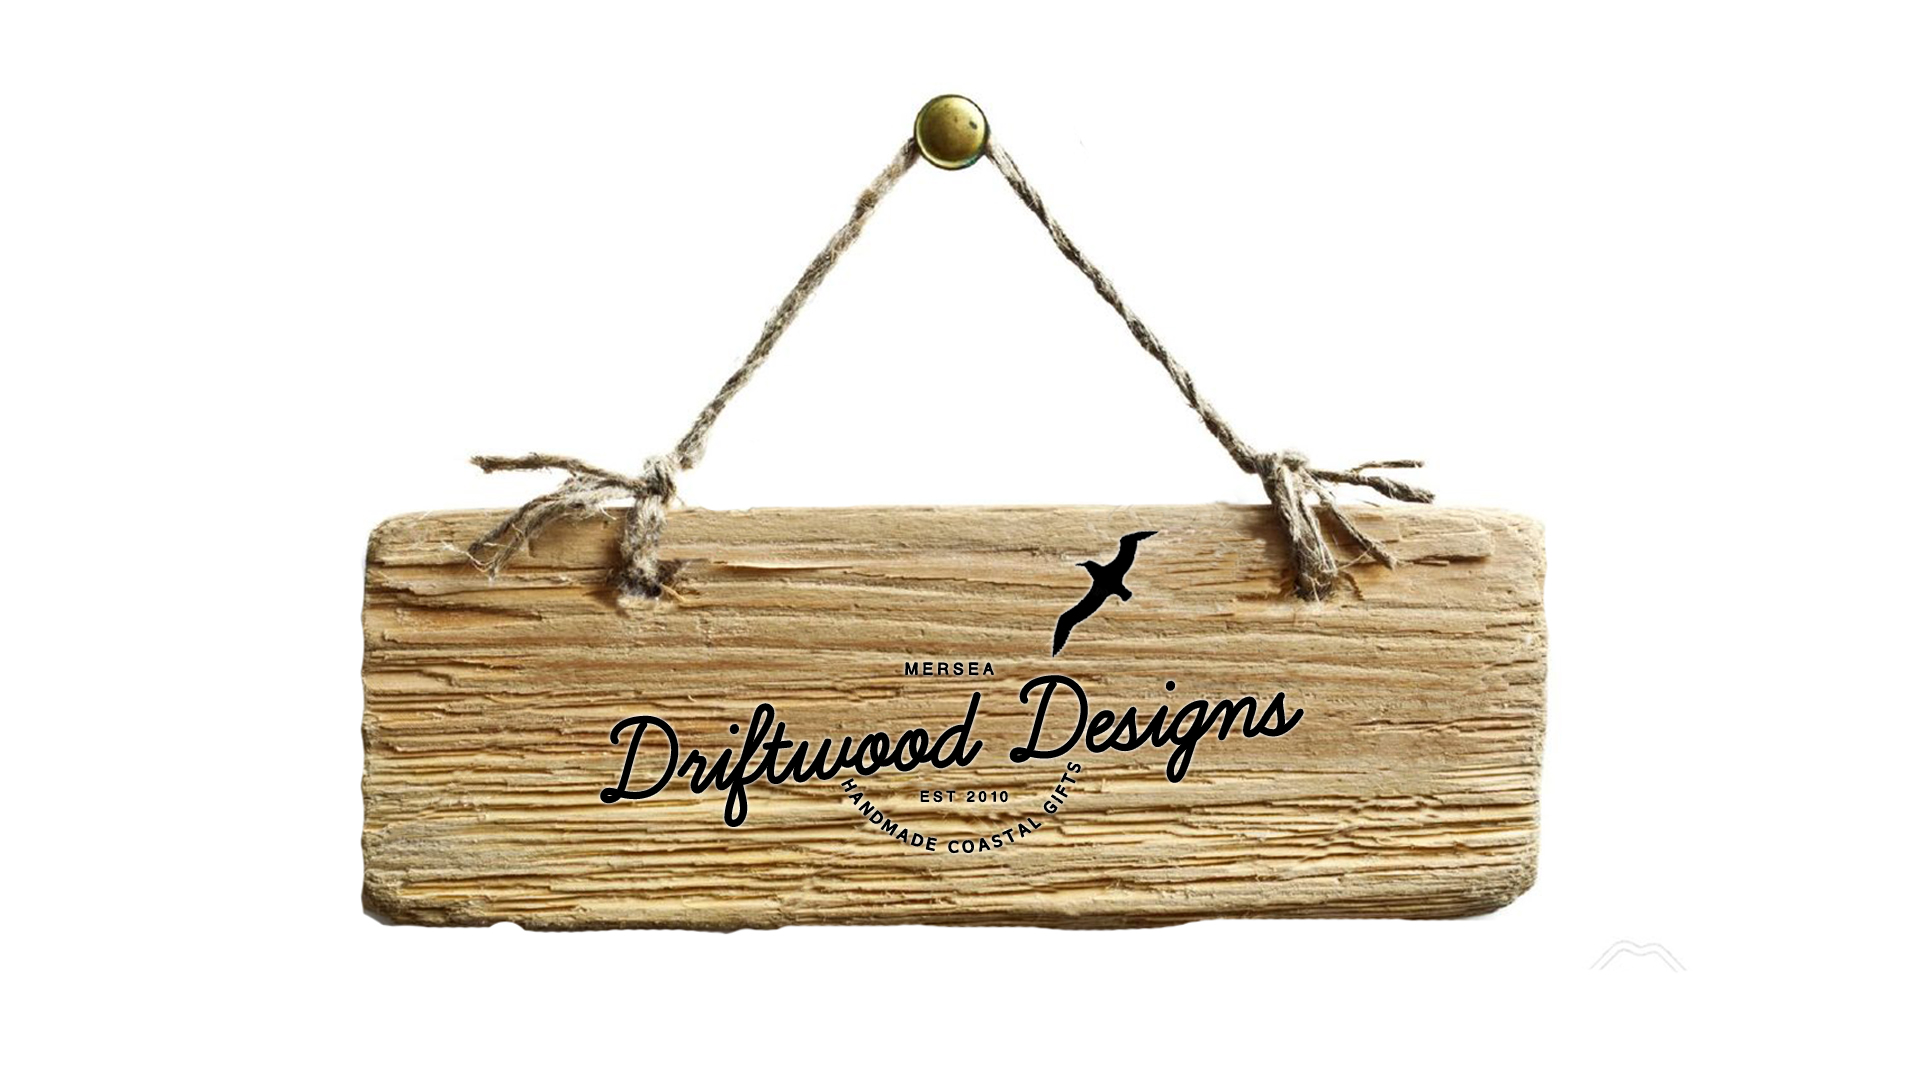 driftwood designs homepage.jpg